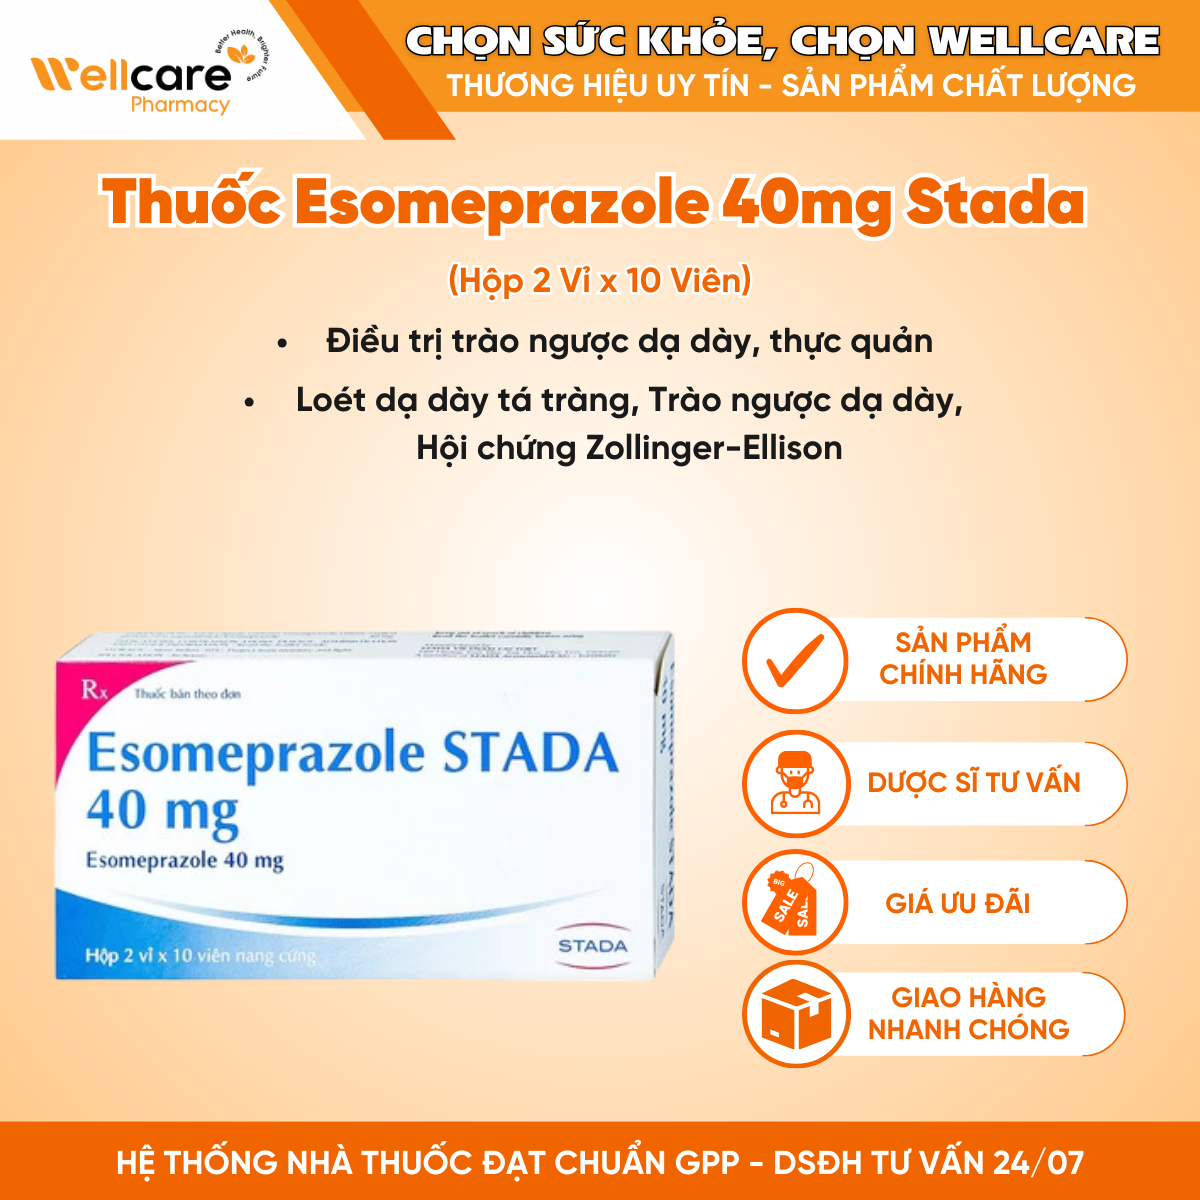 Thuốc Esomeprazole 40mg Stada – Điều trị viêm loét dạ dày, tá tràng (Hộp 2 Vỉ x 10 Viên)